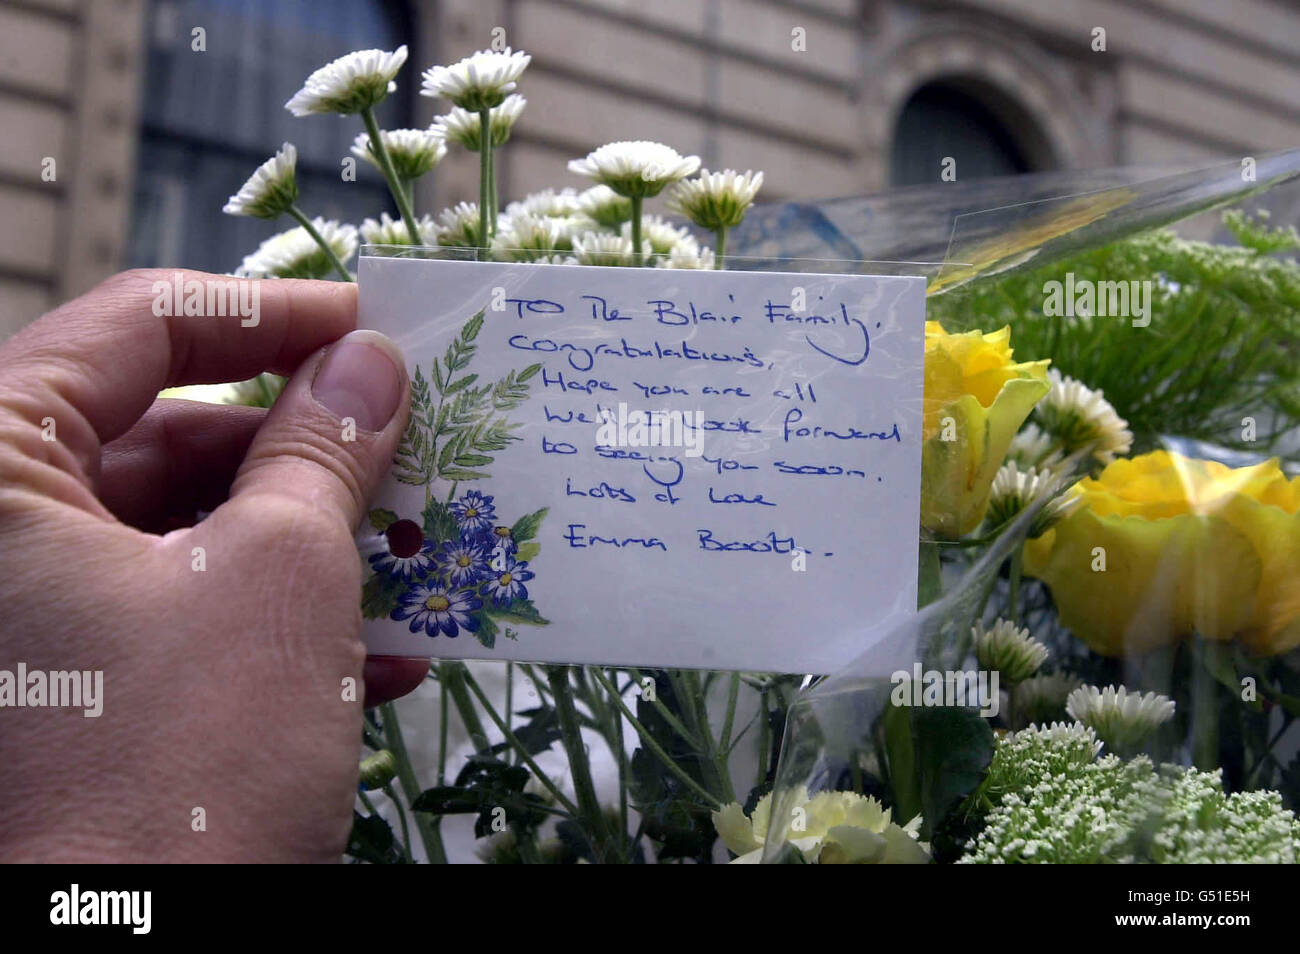 Eine Grußkarte mit Blumen an die Nummer 10 Downing Street für den Premierminister Tony Blair und seine Frau Cherie, die nach der Geburt eines Jungen in den frühen Morgenstunden ruht. Stockfoto